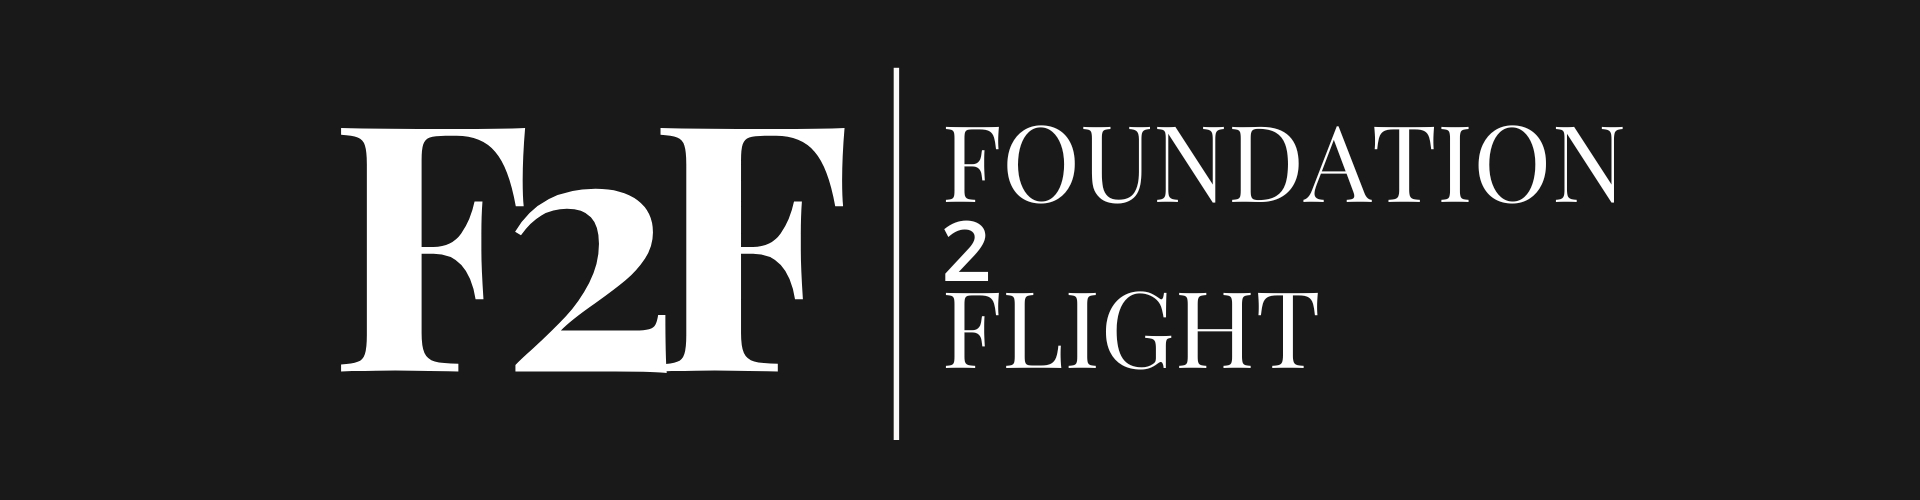 Foundation 2 Flight